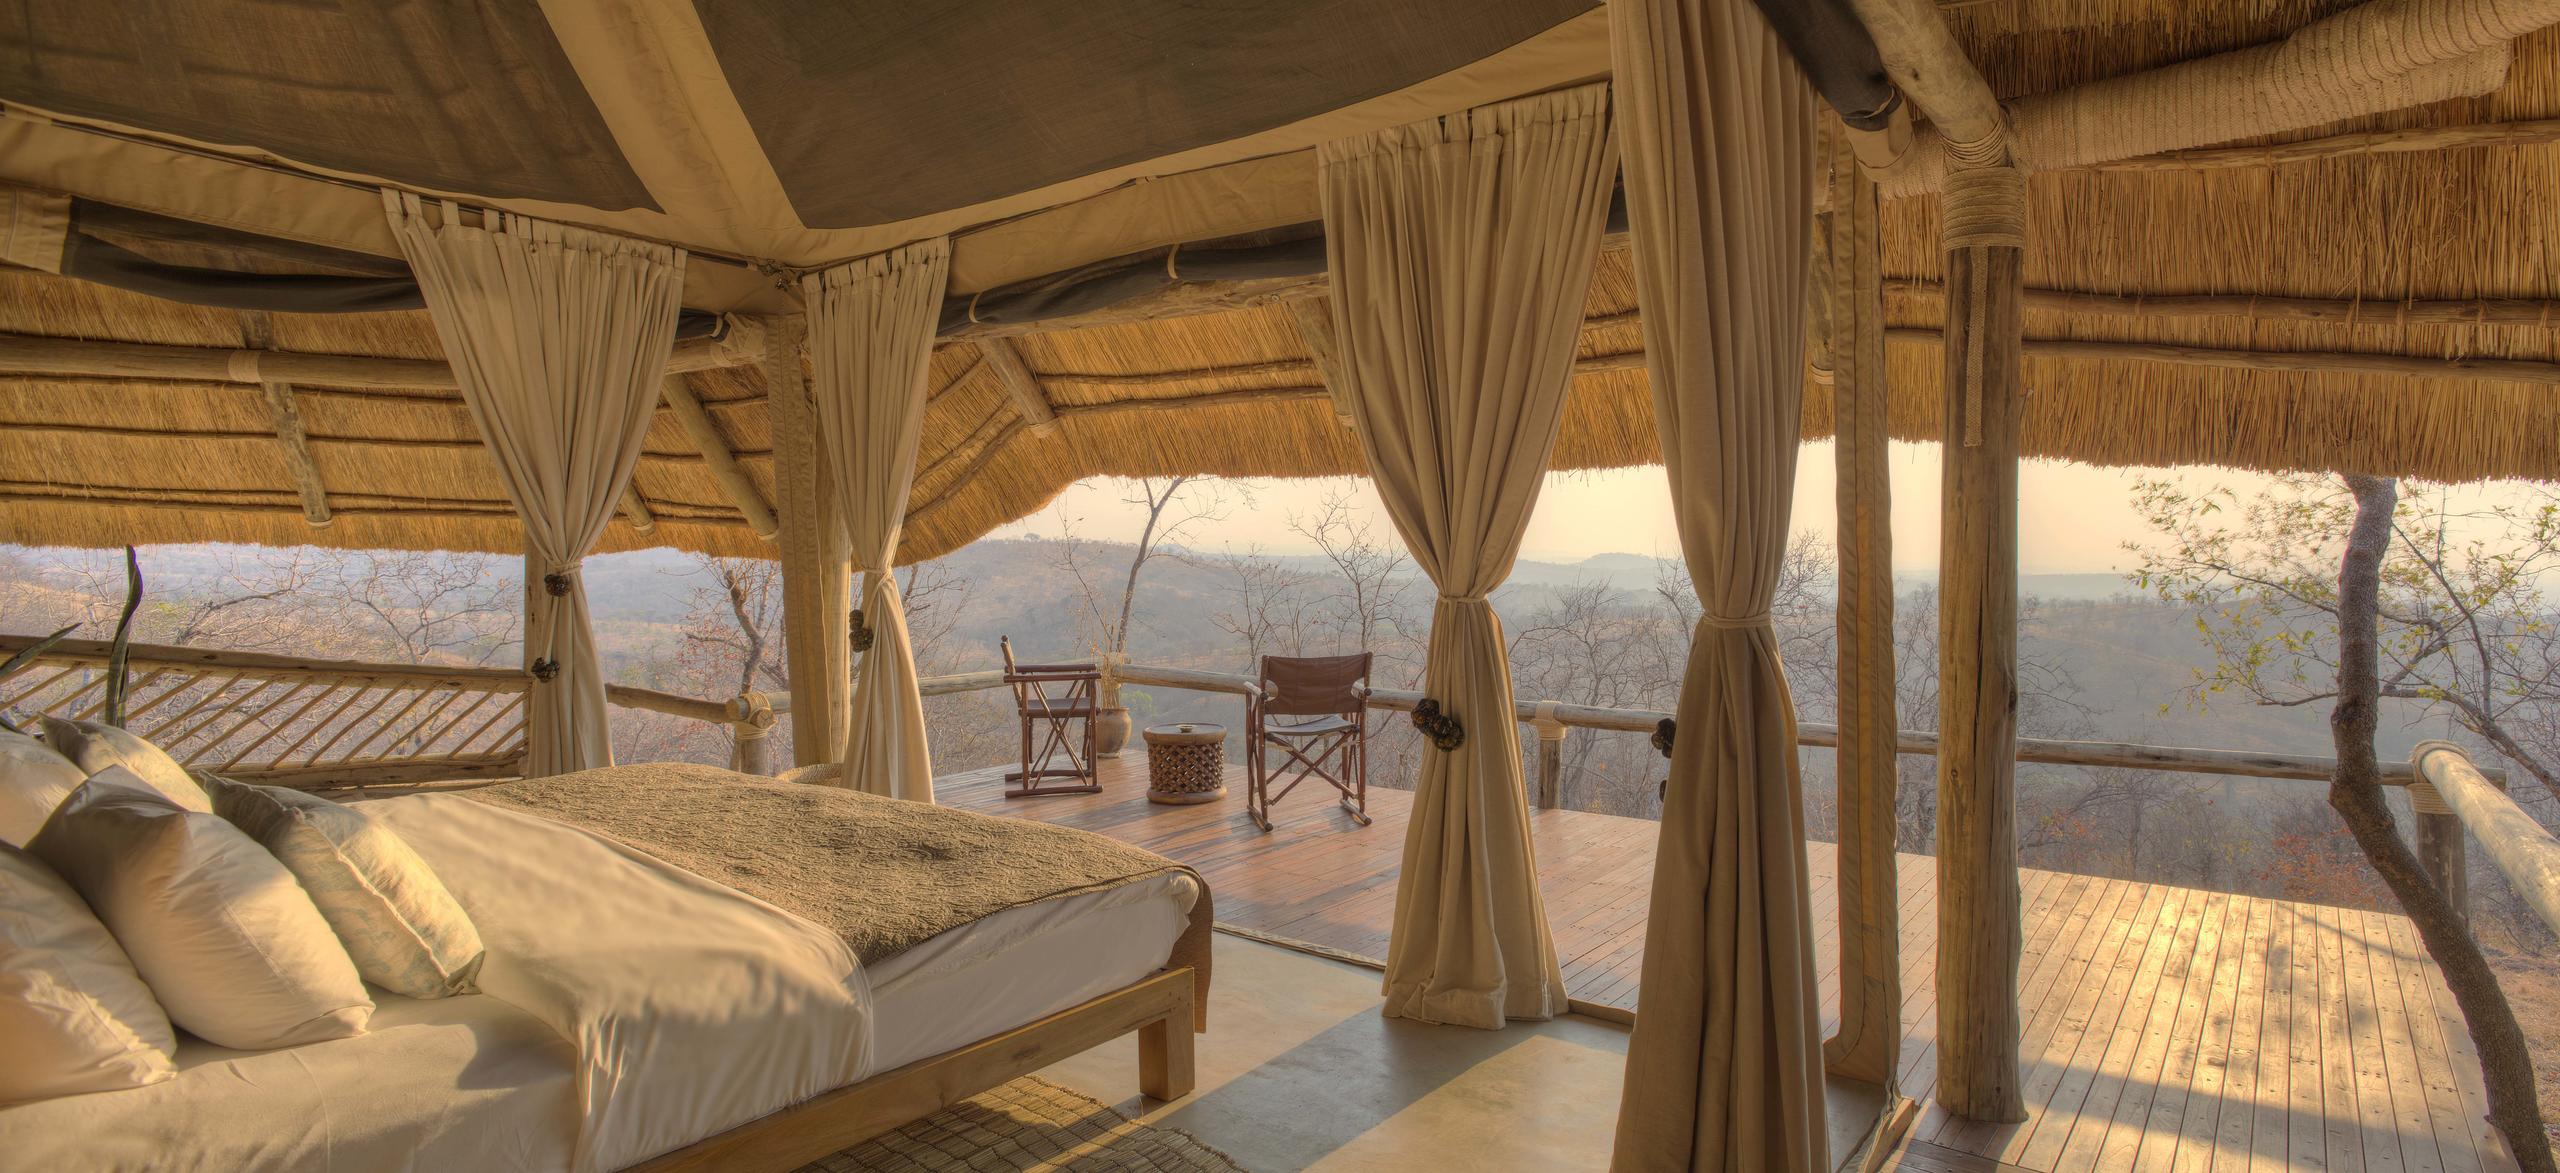 The Luxury Safari Company Serengeti Safari Camp